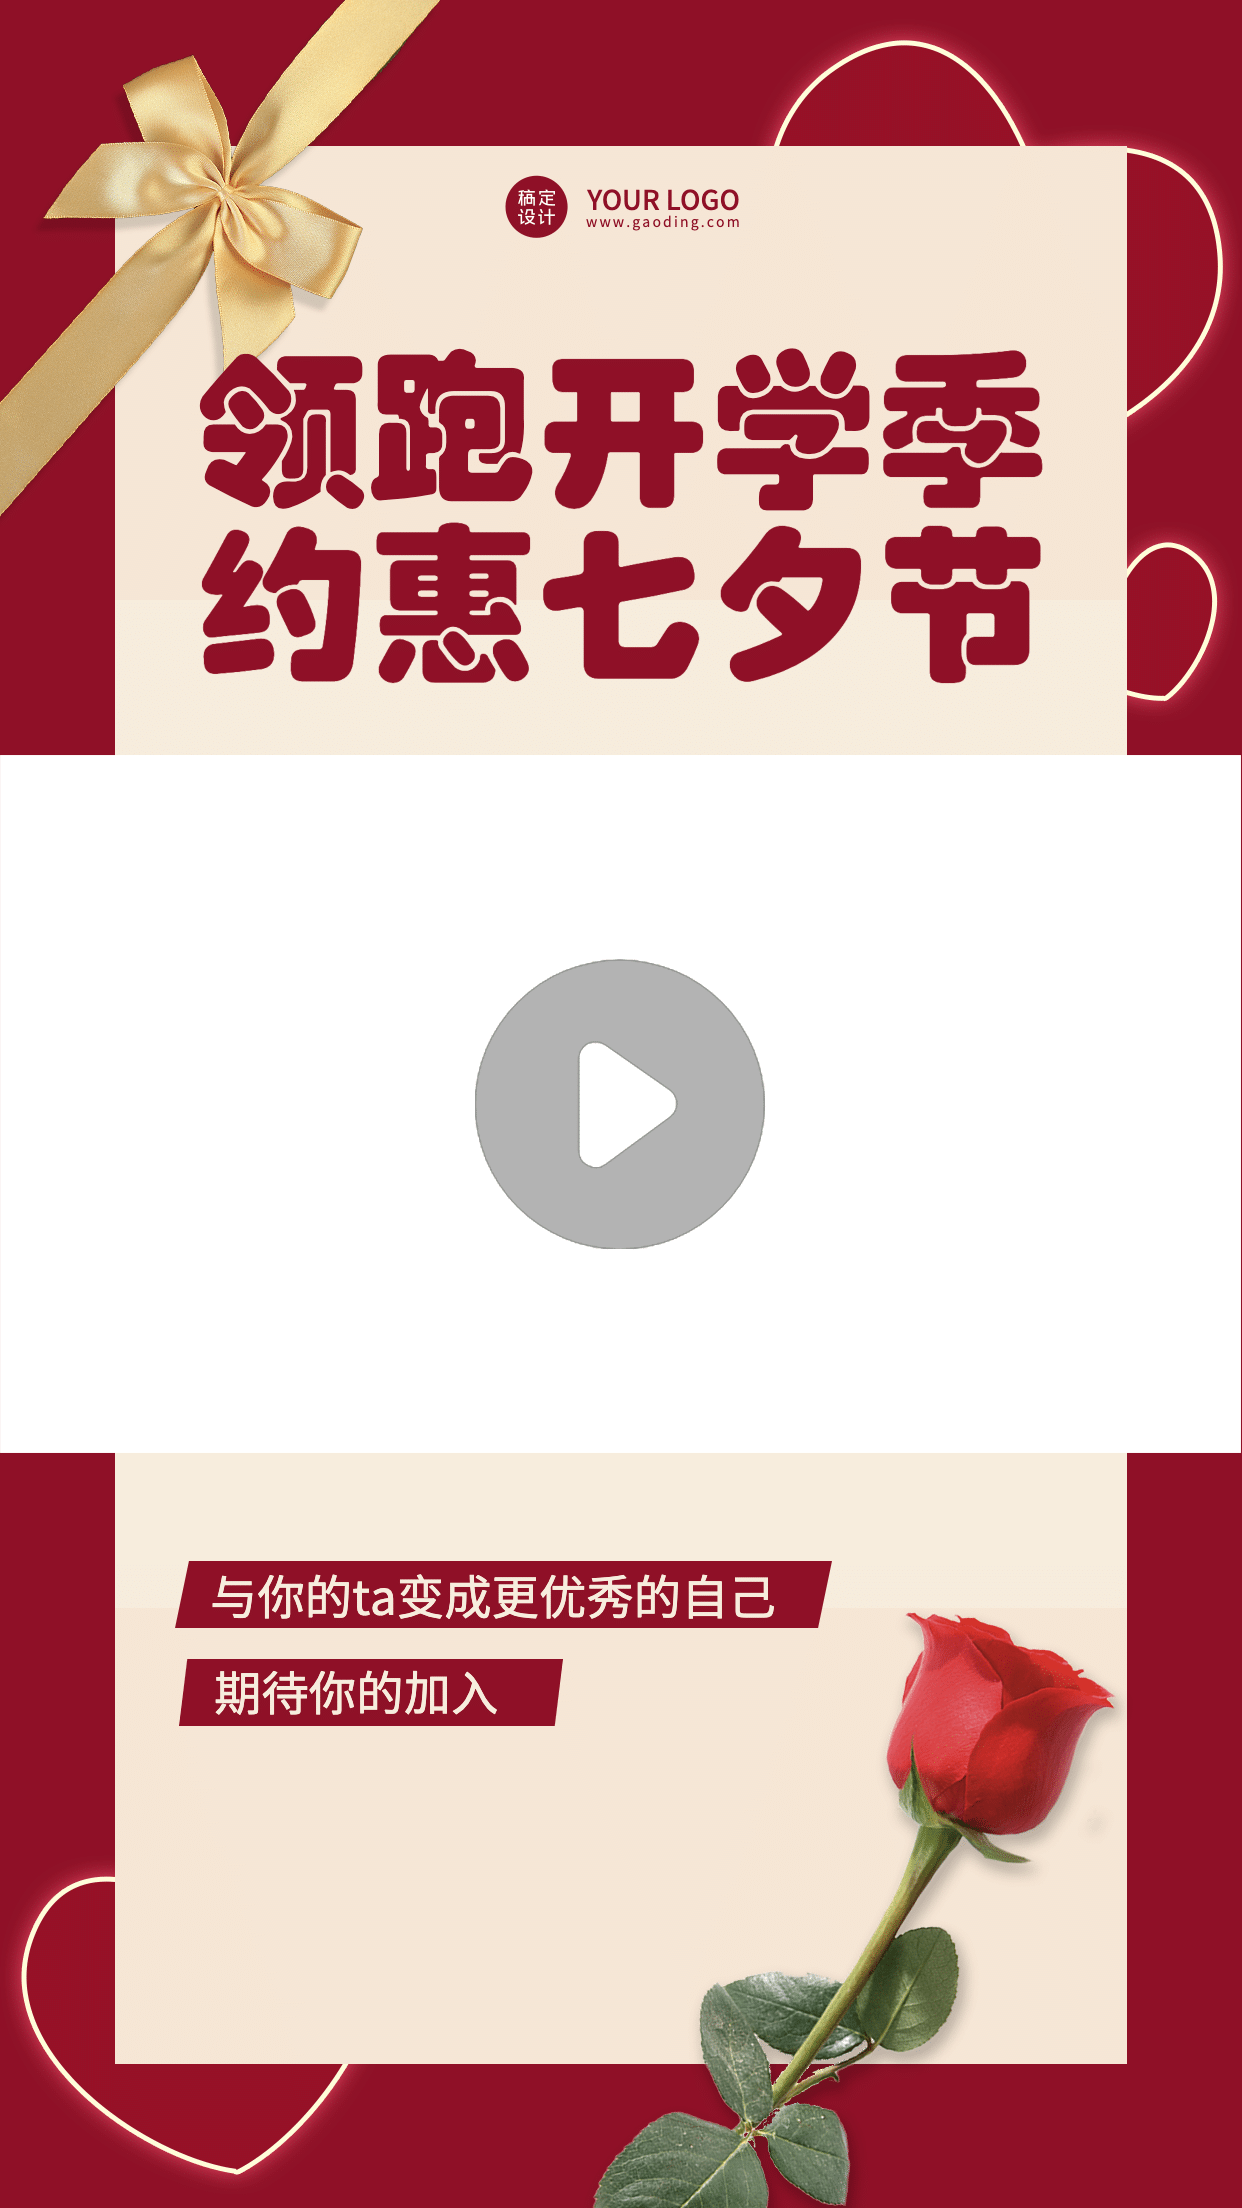 七夕情人节直播课程营销视频边框预览效果